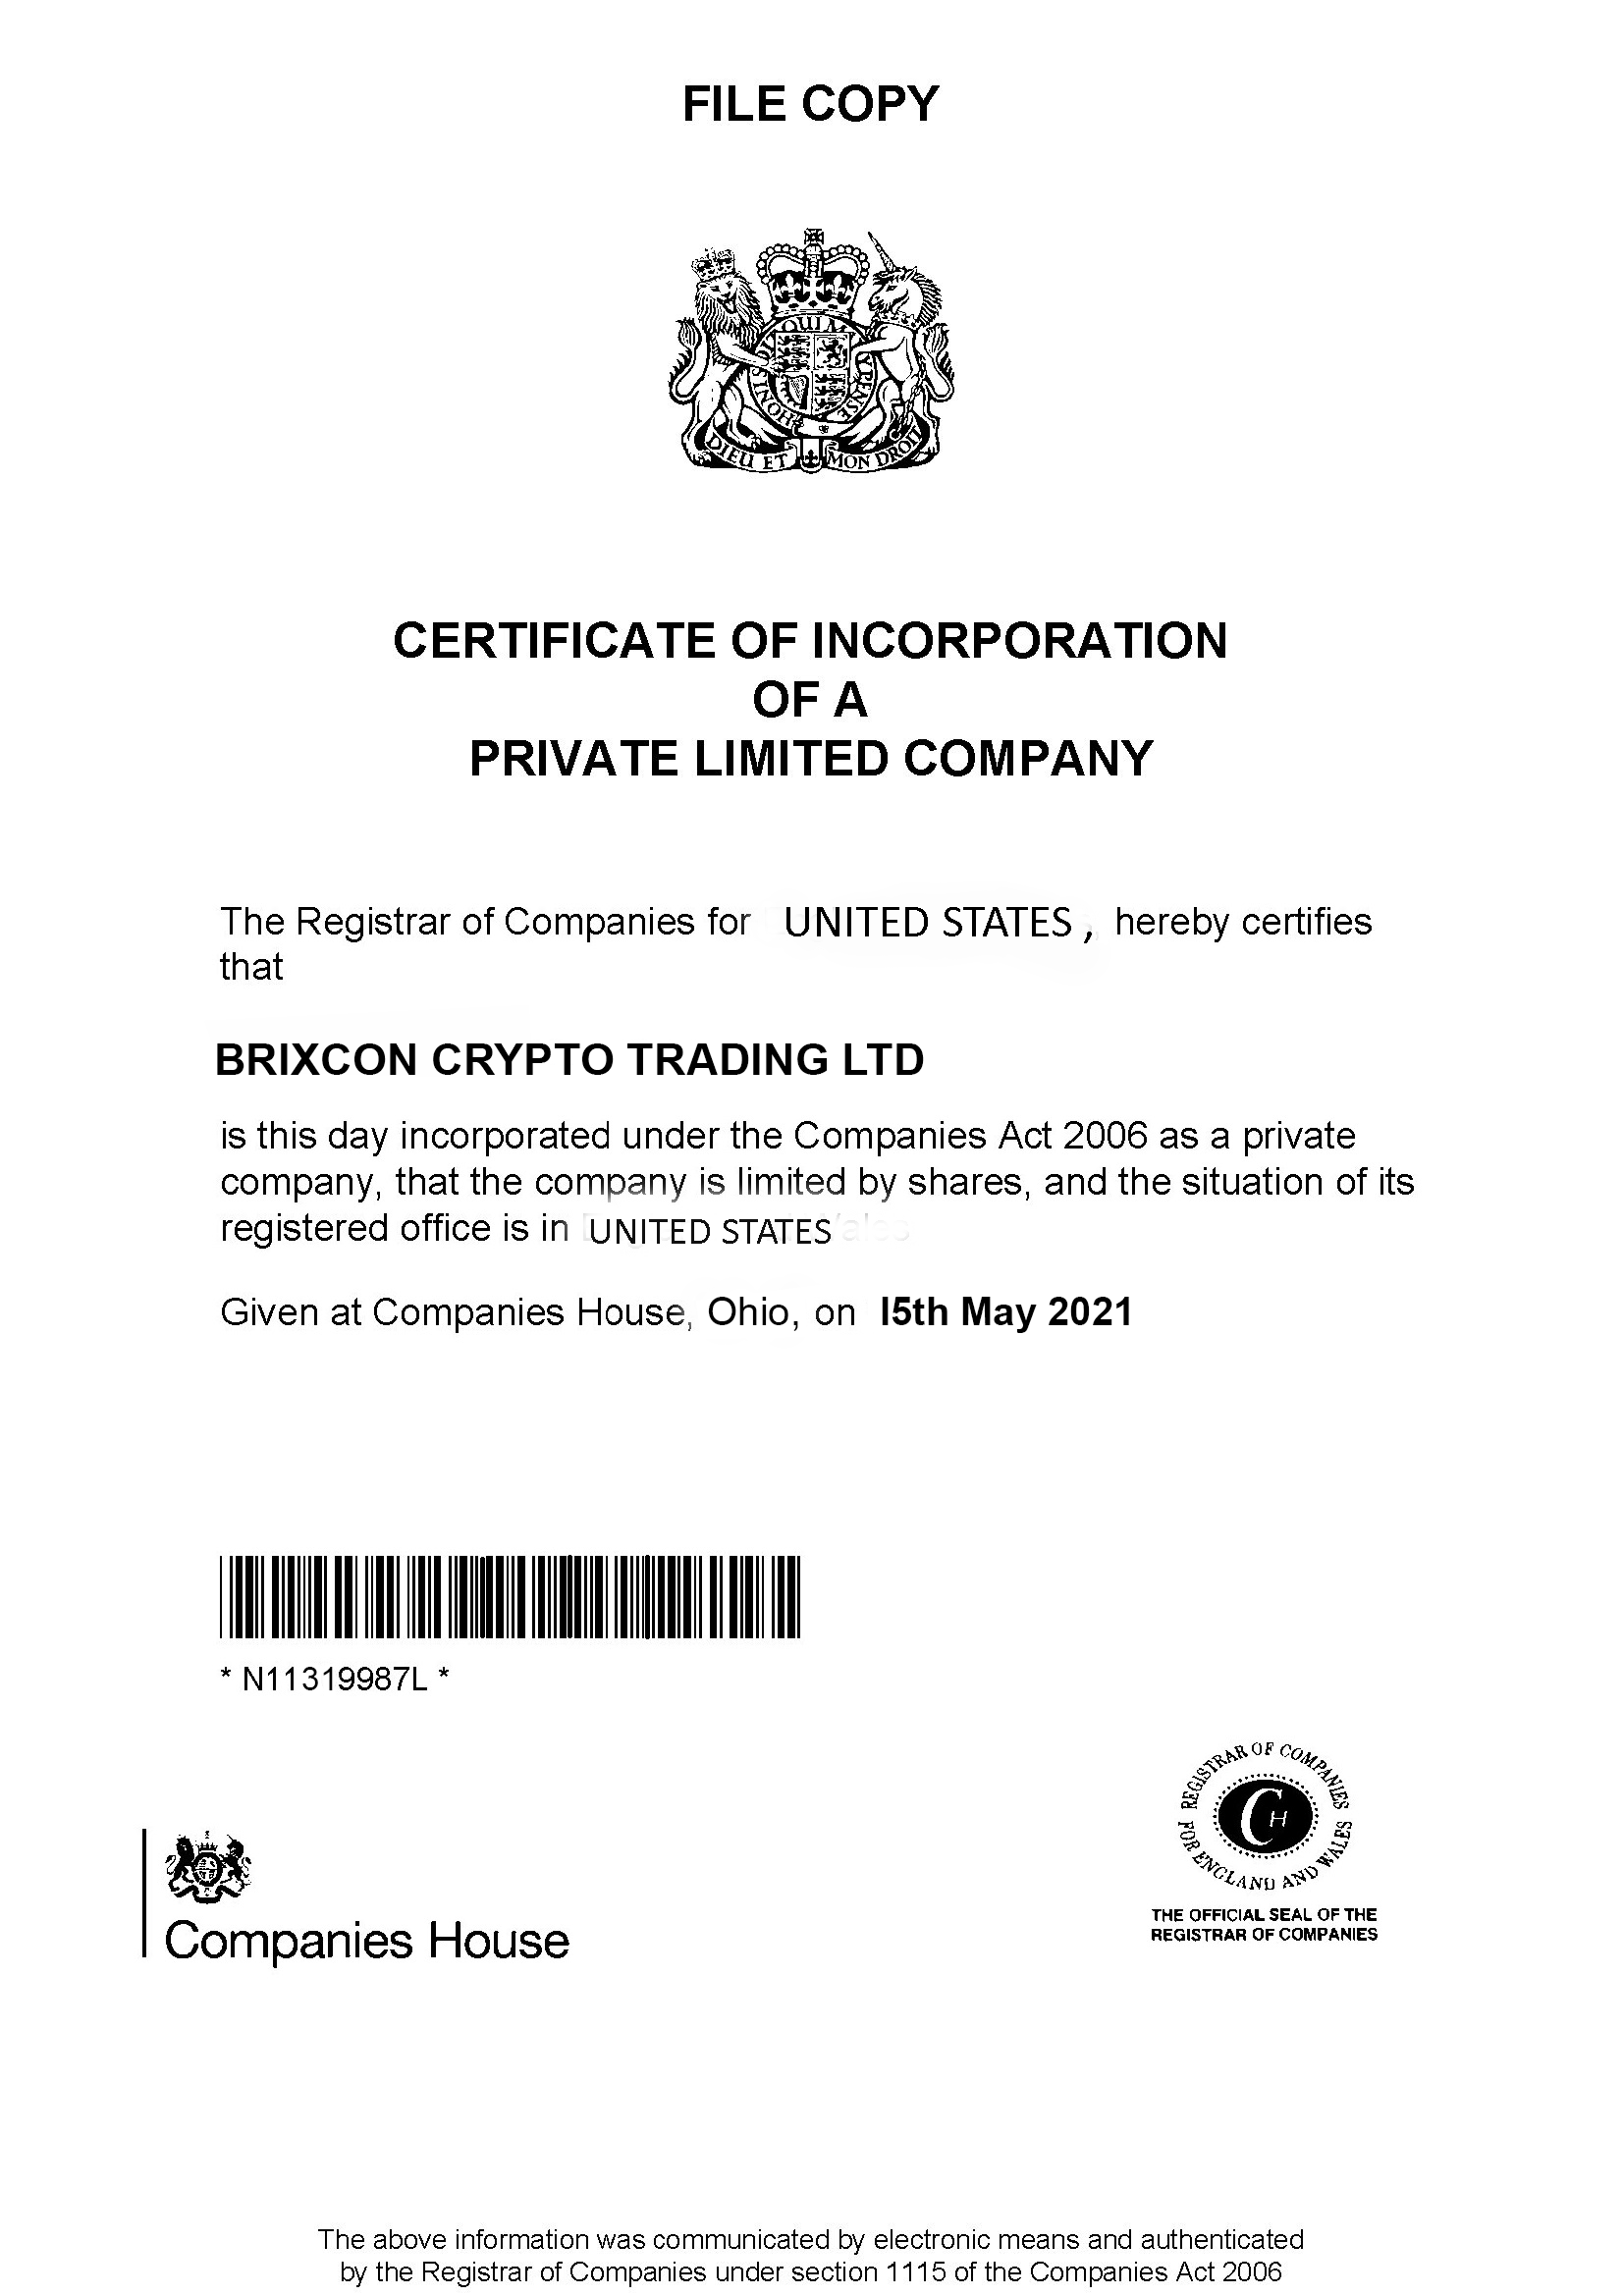 Brixcon Certificate